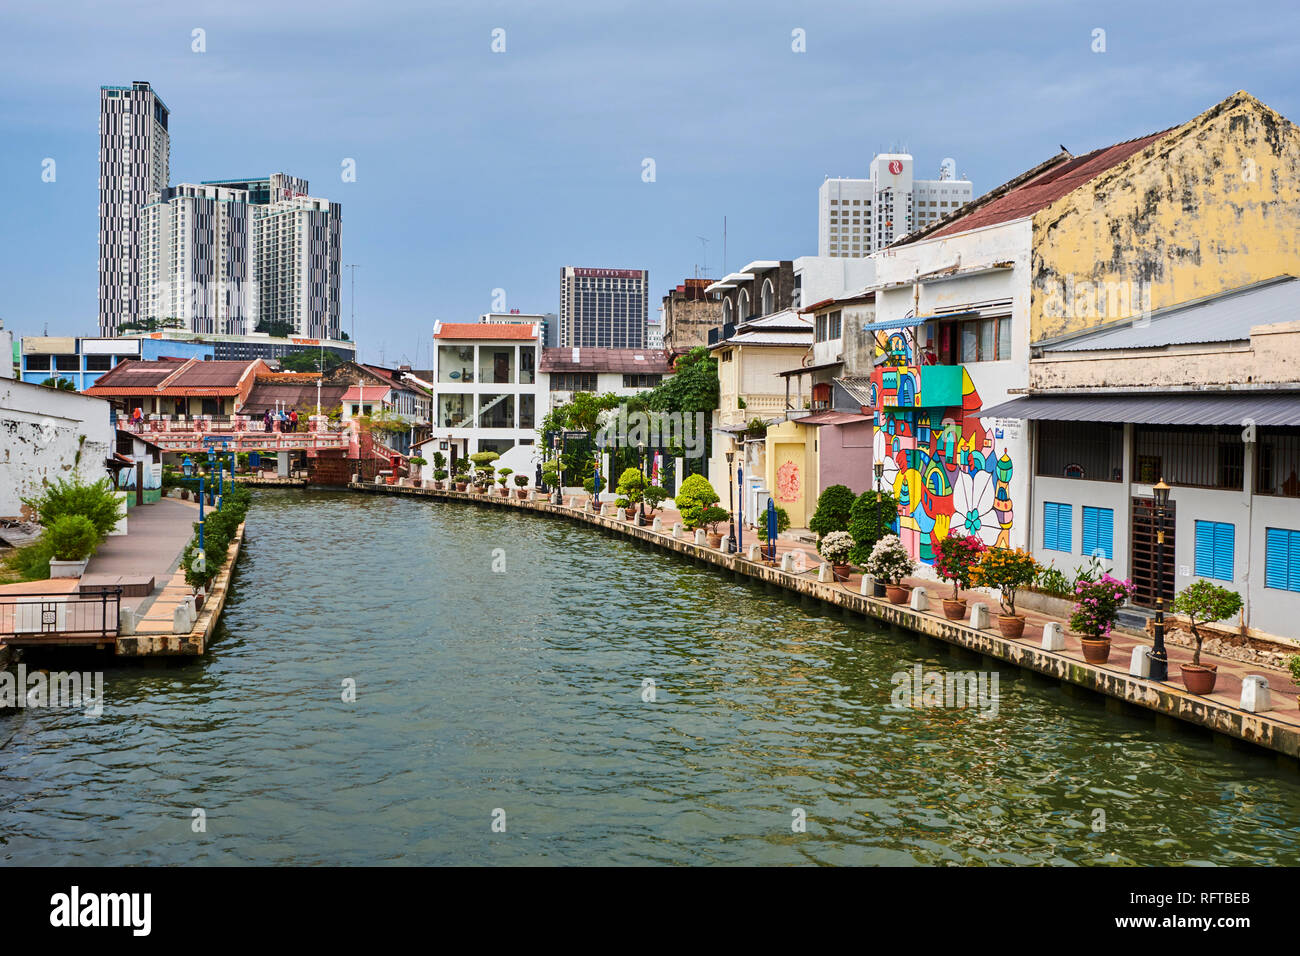 La pintura de la pared y el canal, Malacca, Sitio del Patrimonio Mundial de la UNESCO, Estado de Malacca, Malasia, Sudeste Asiático, Asia Foto de stock